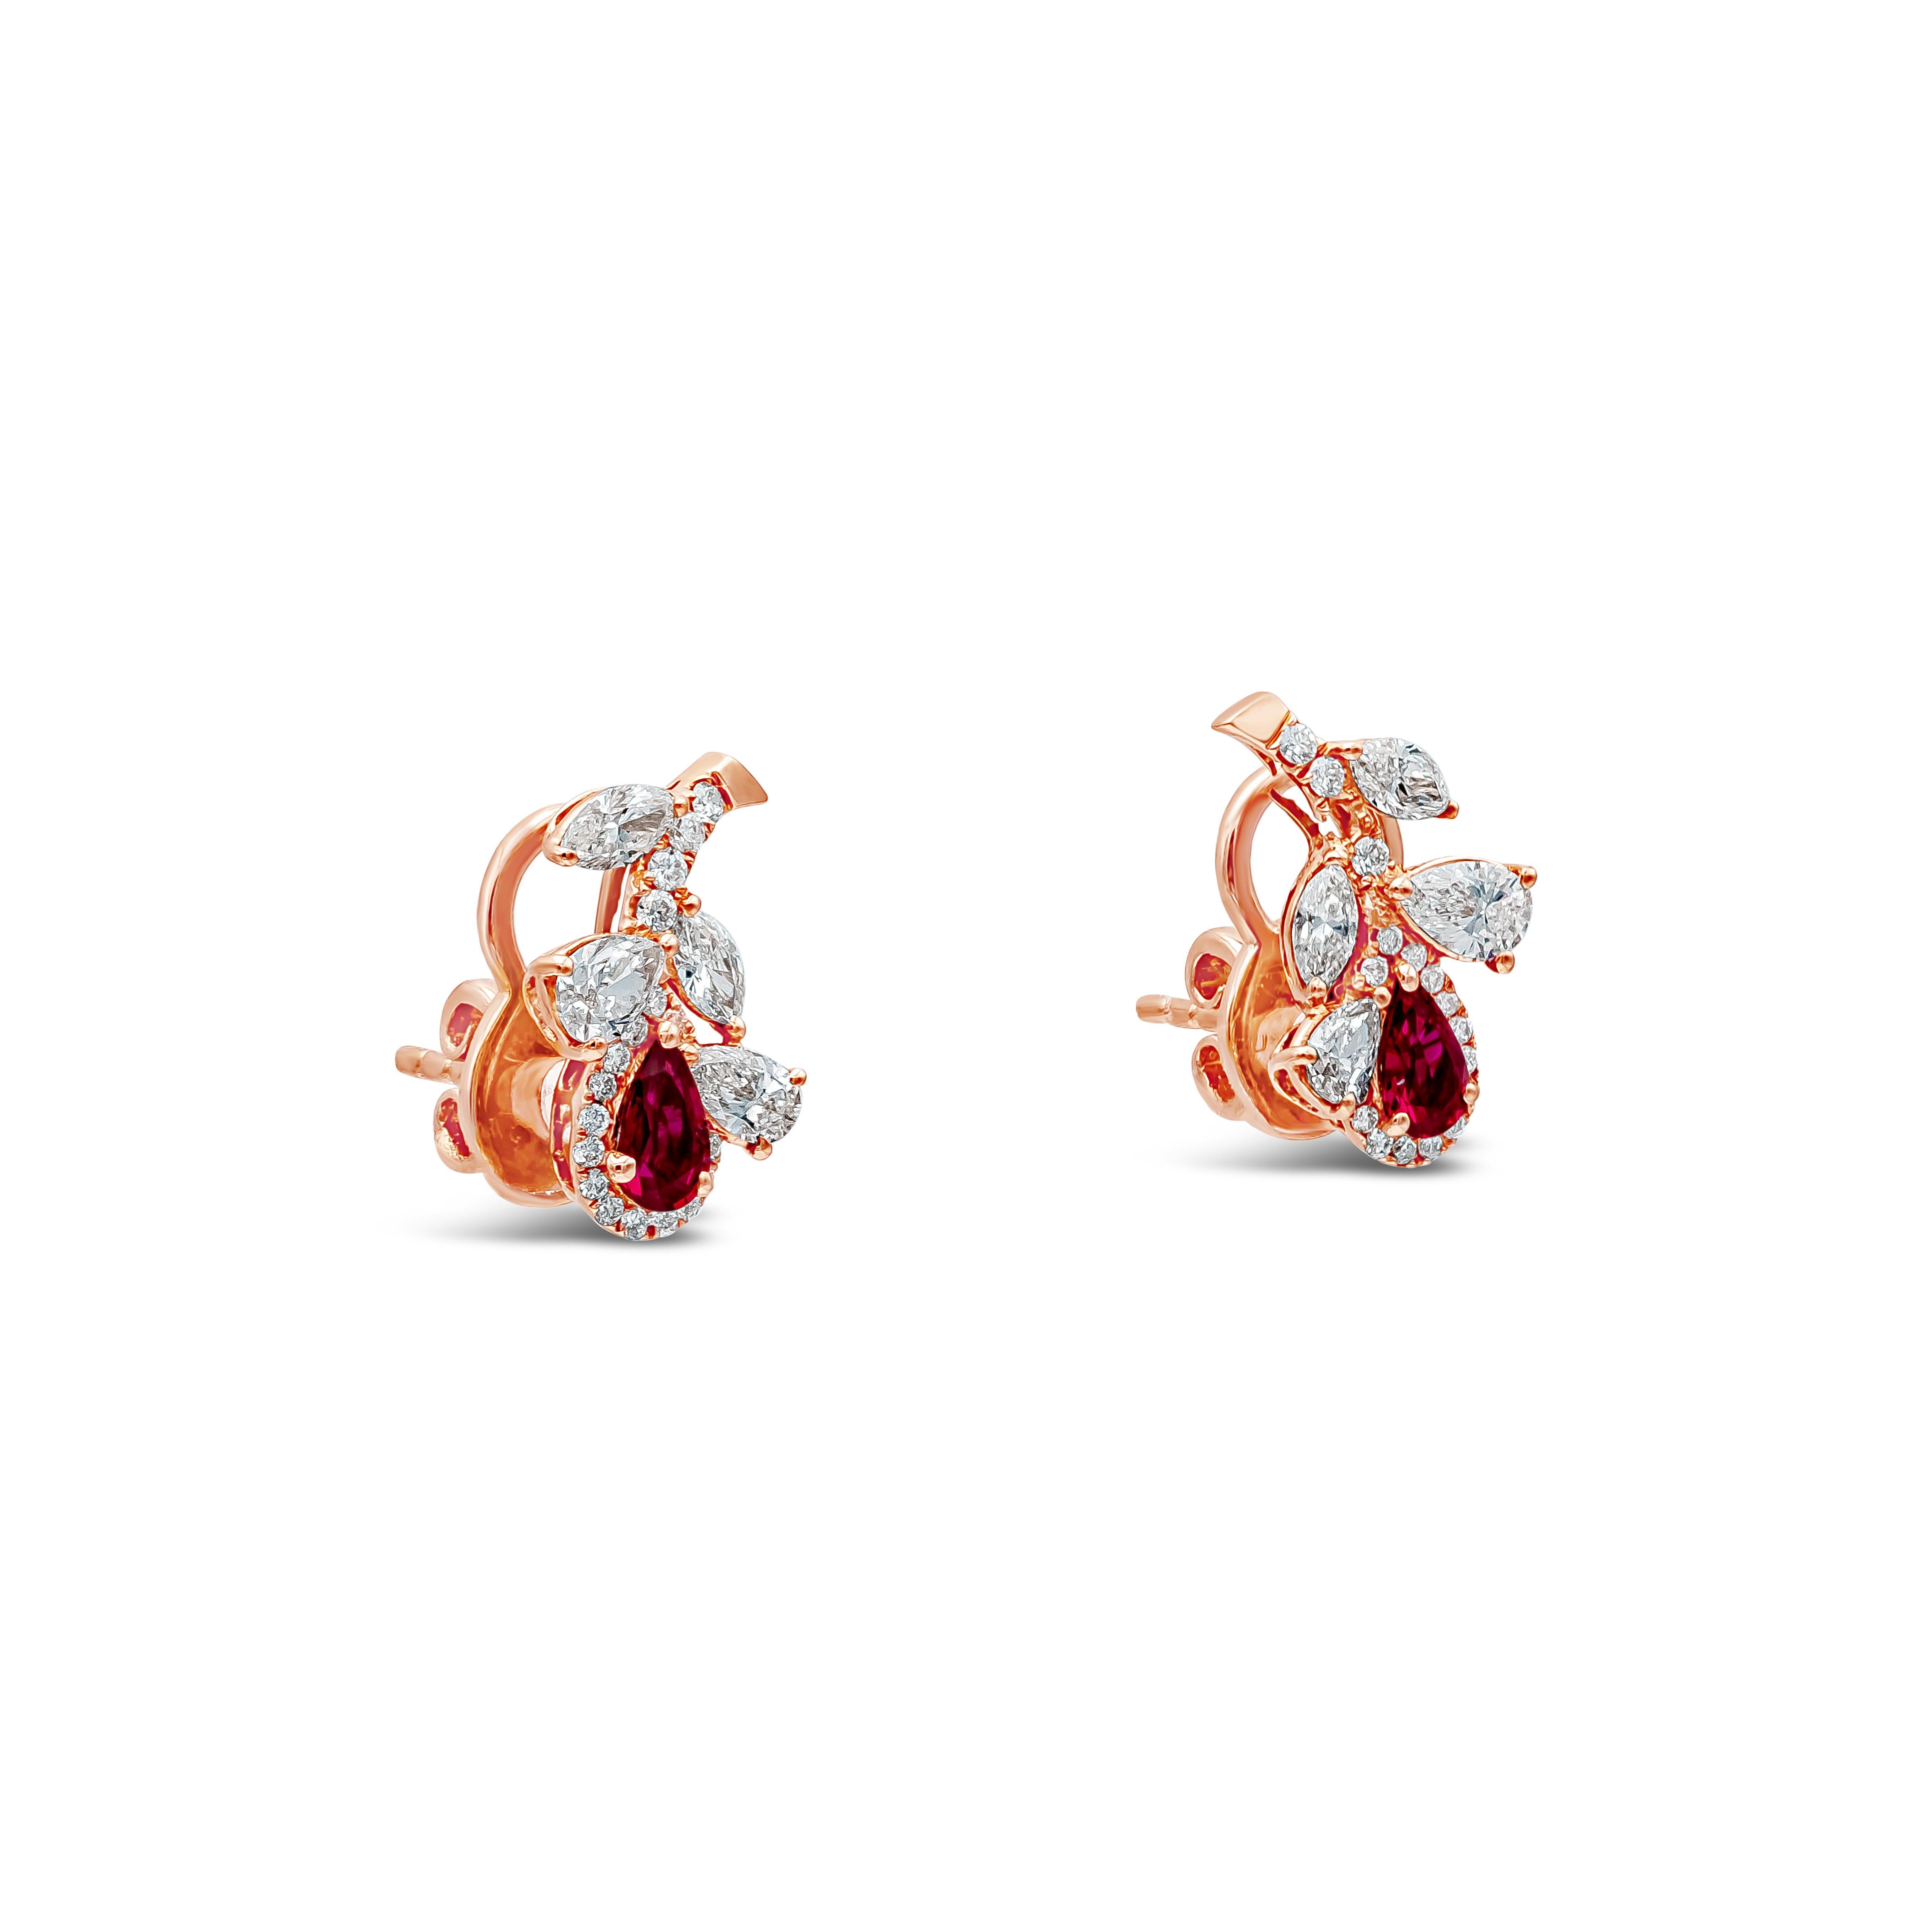 Ein modisches Paar Ohrringe mit einem Diamanten im Birnen- und Marquise-Schliff, blauen Saphiren und roten Rubinen in Birnenform, eingefasst in eine Blume. Die Blume ist mit einem Diamanten im Birnen- und Marquise-Schliff besetzt, der insgesamt etwa